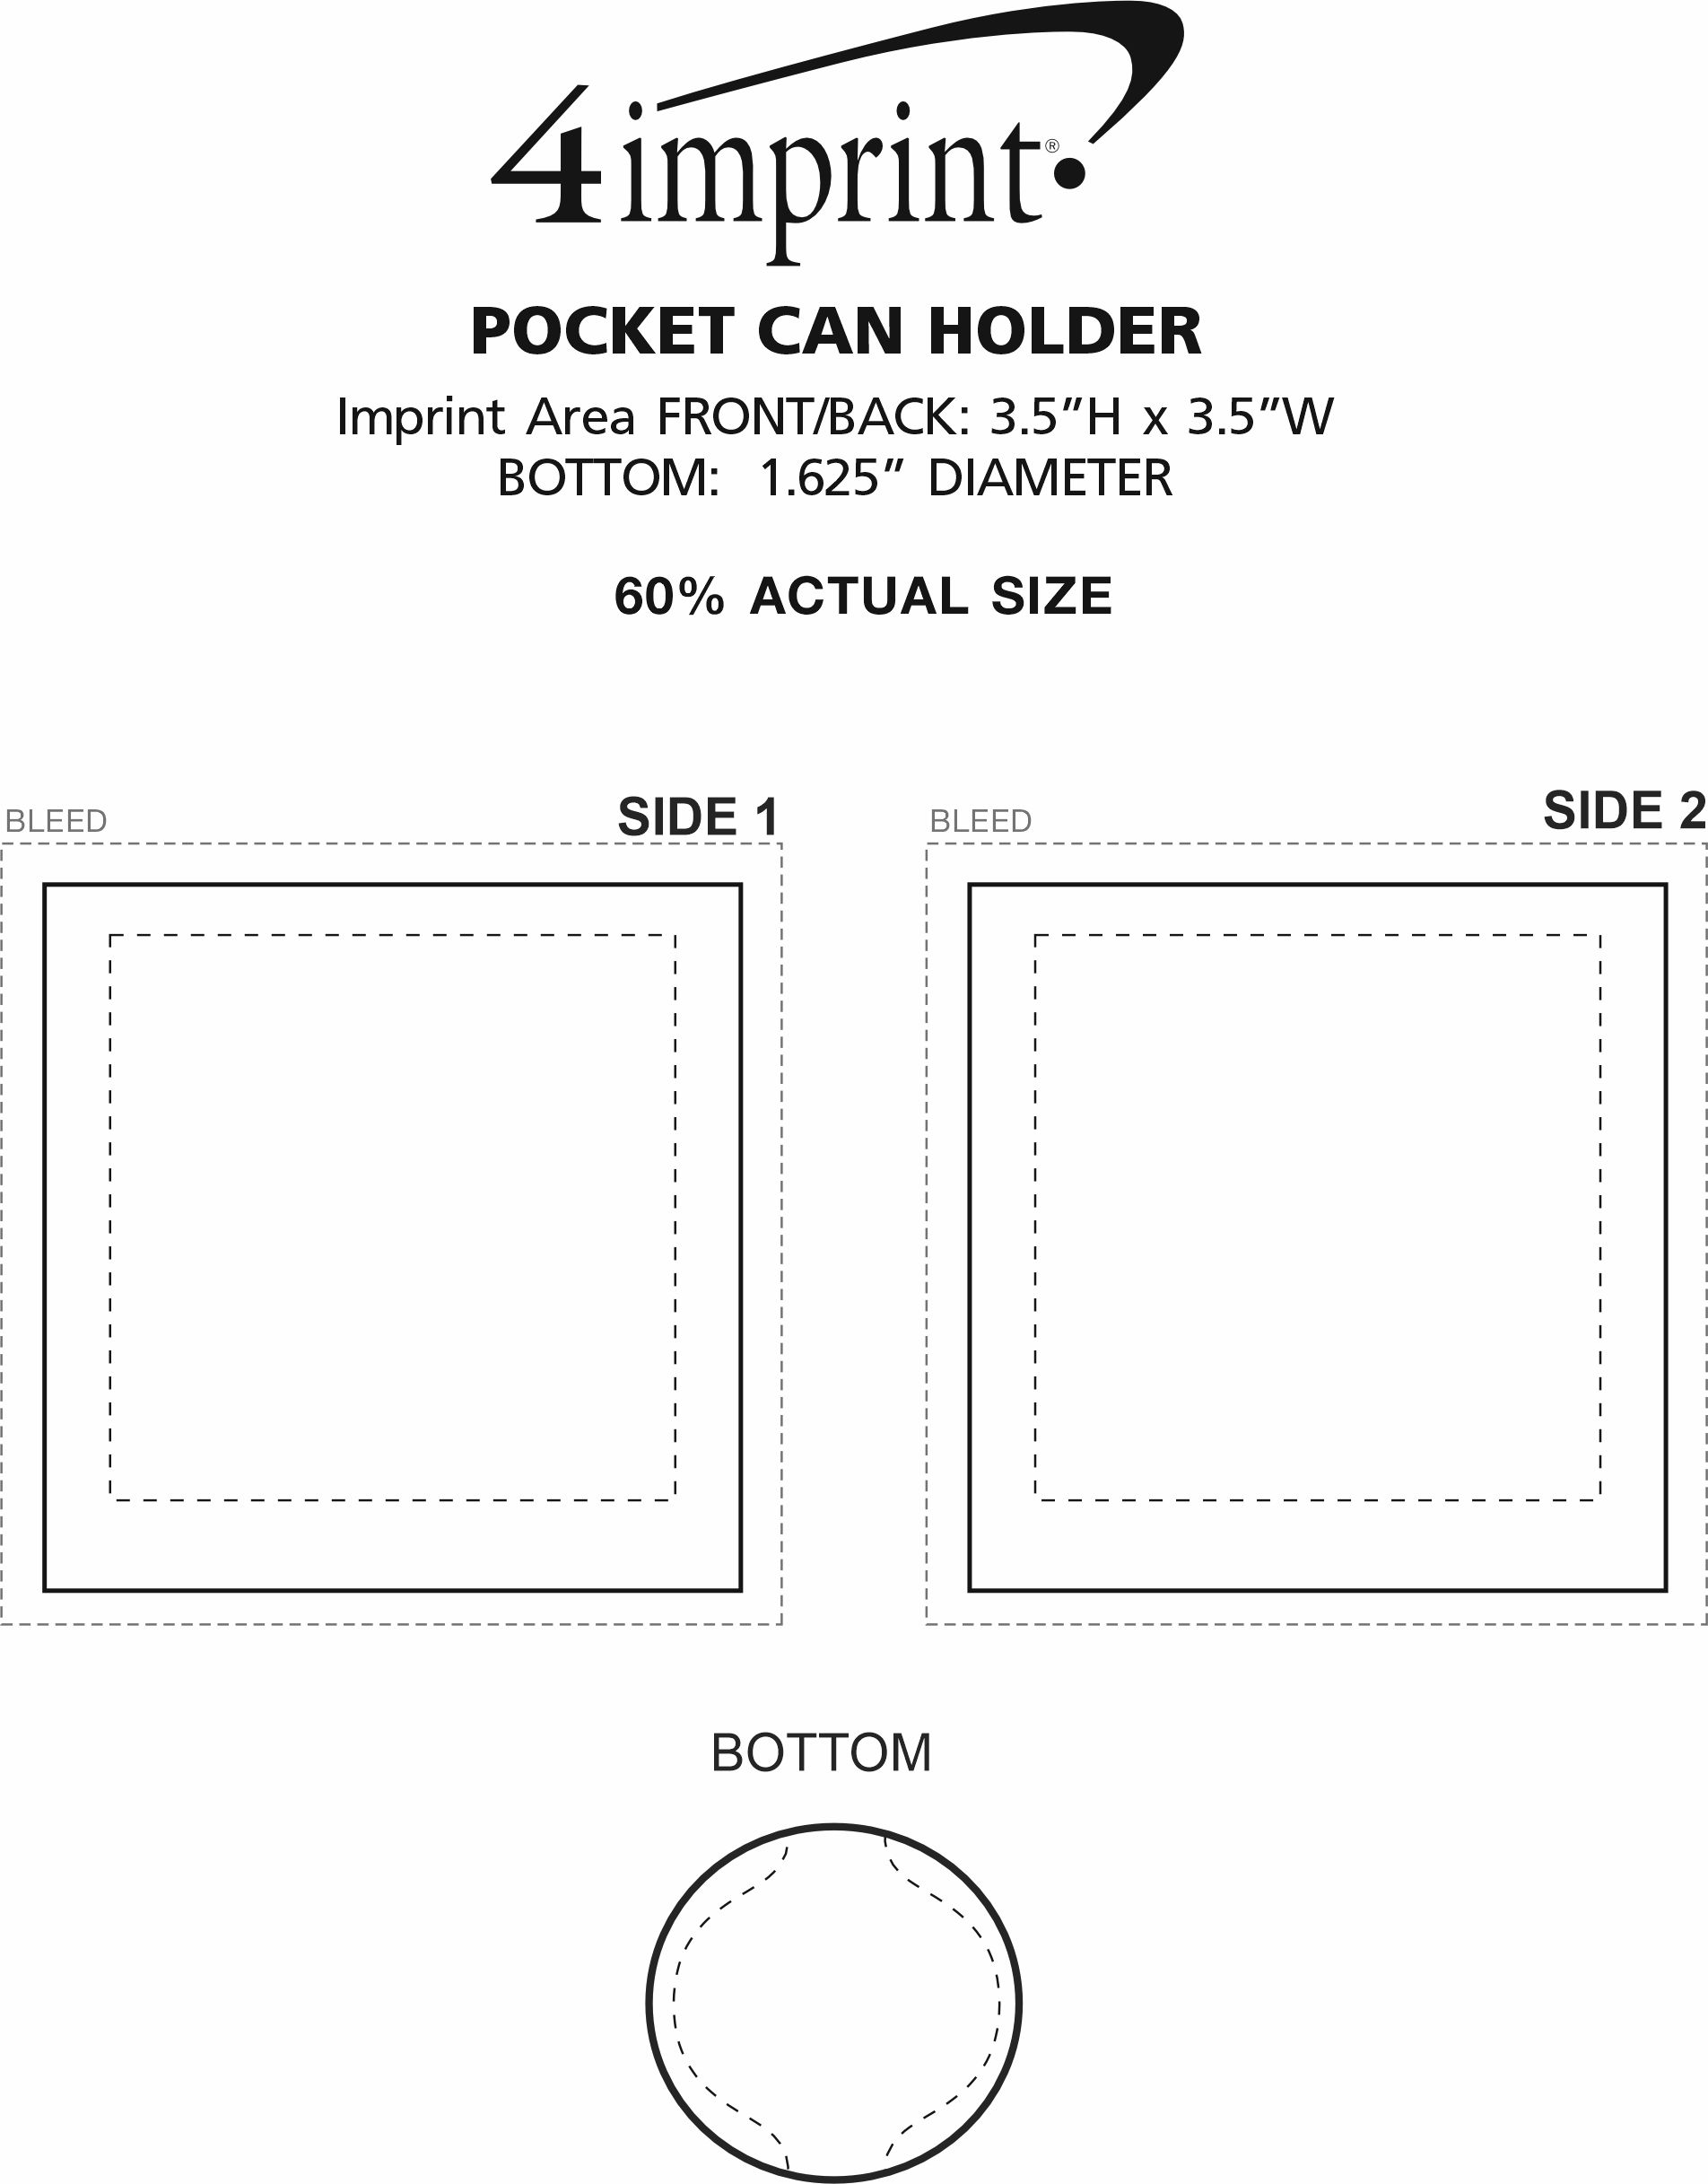 Imprint Area of Pocket Can Holder